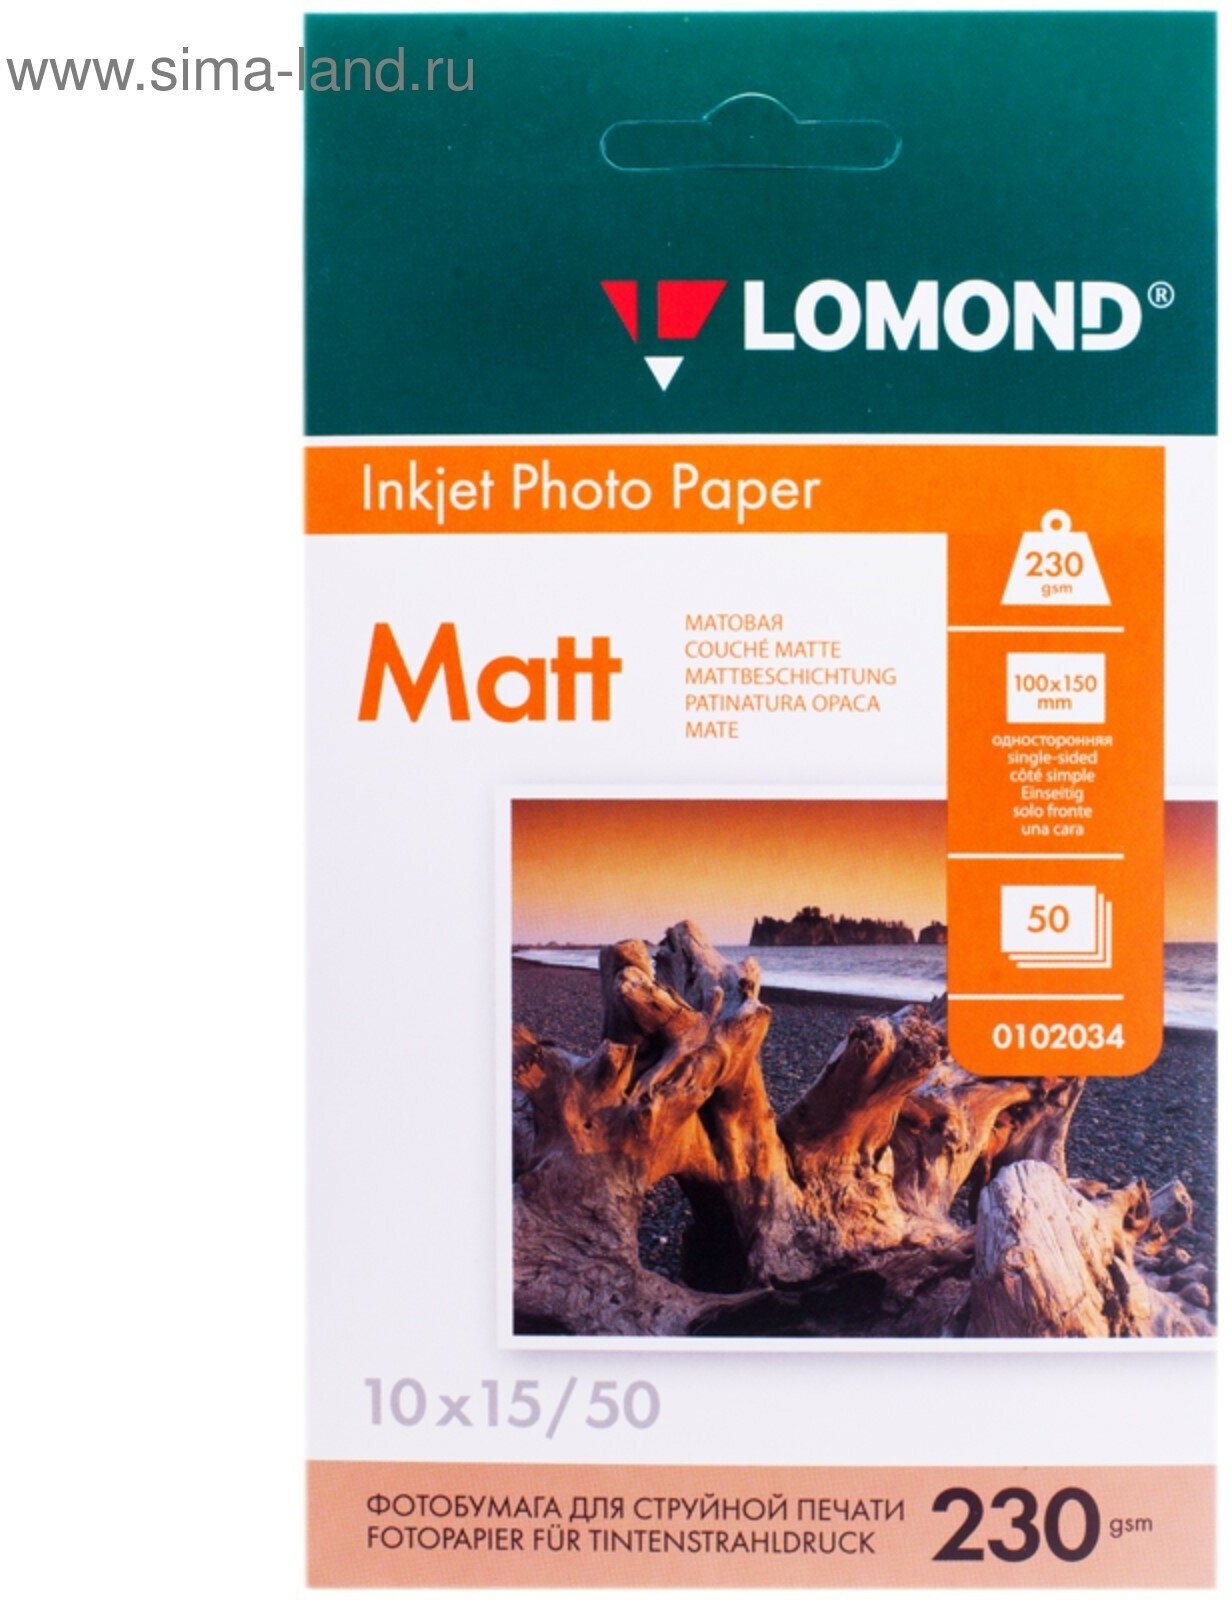 Фотобумага для струйной печати А6 (100 x 150 мм), 50 листов, 230 г/м2, односторонняя, матовая